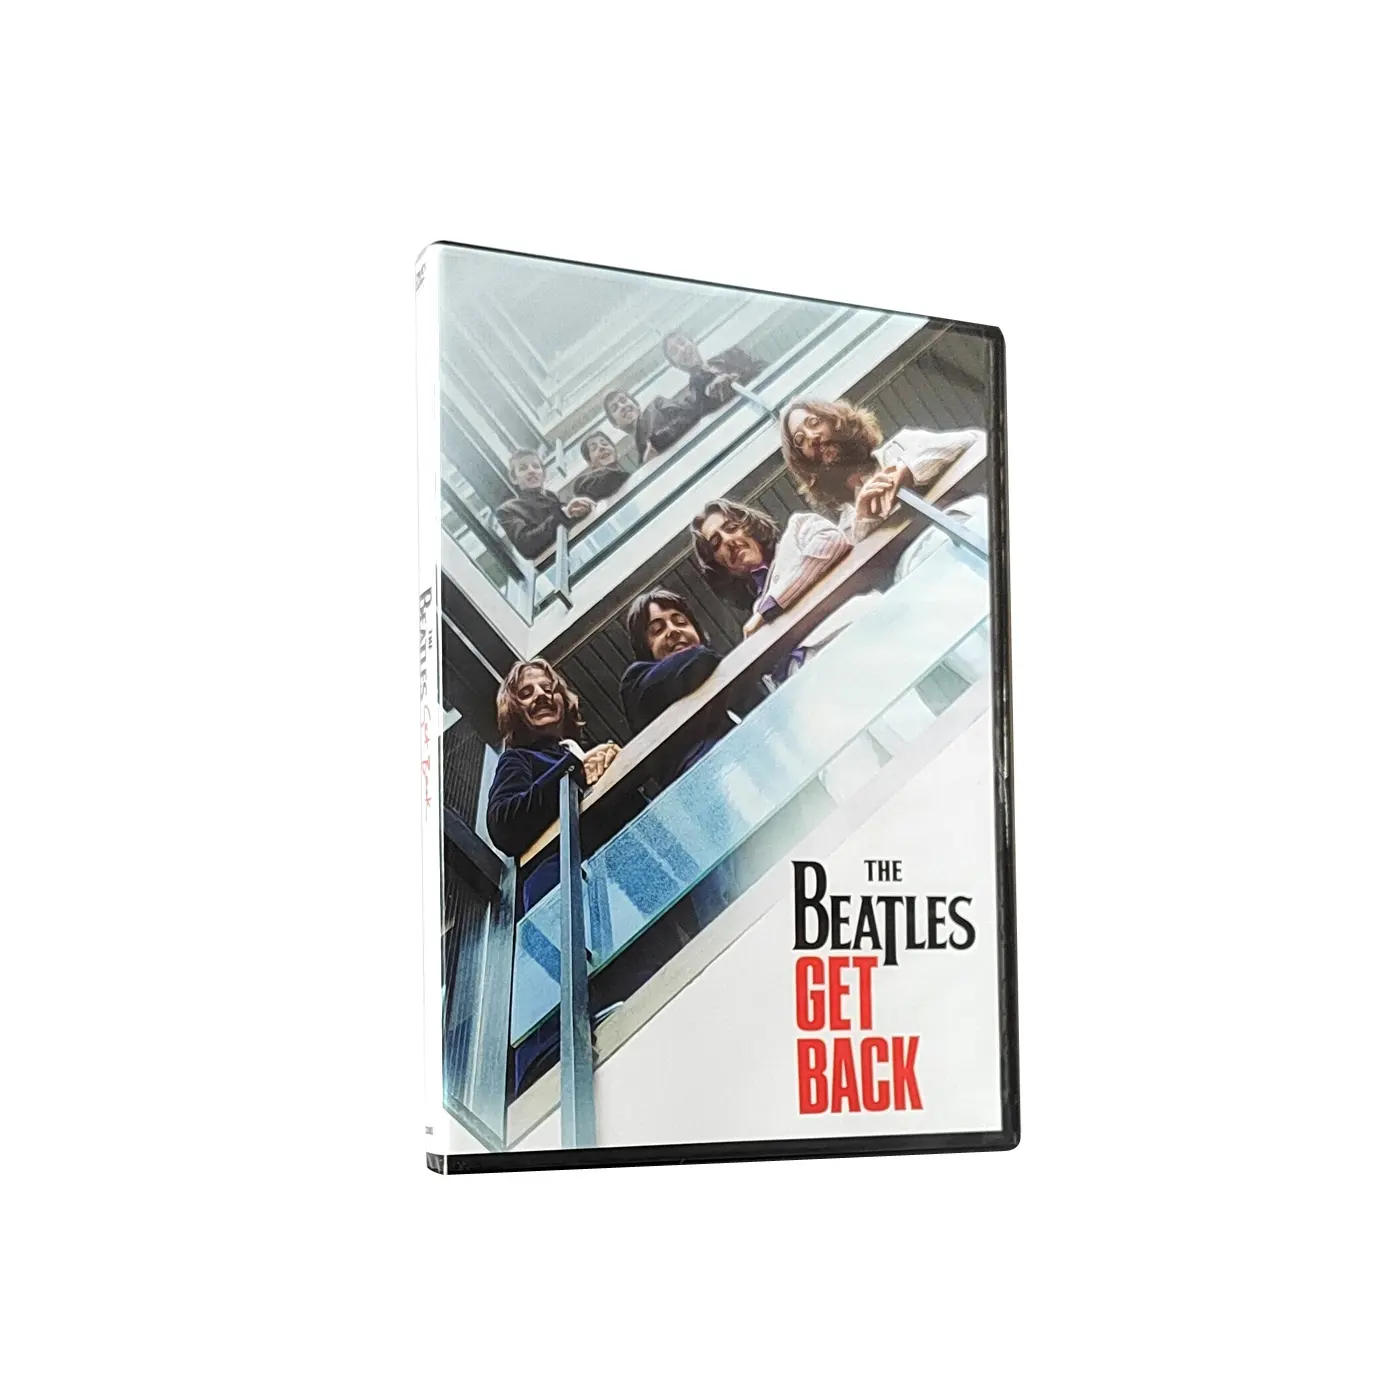 Kopen Nieuwe China Gratis Verzending Fabriek Dvd Boxed Sets Film Disk Duplicatie Print Tv Show De Beatles Terug 3Disc